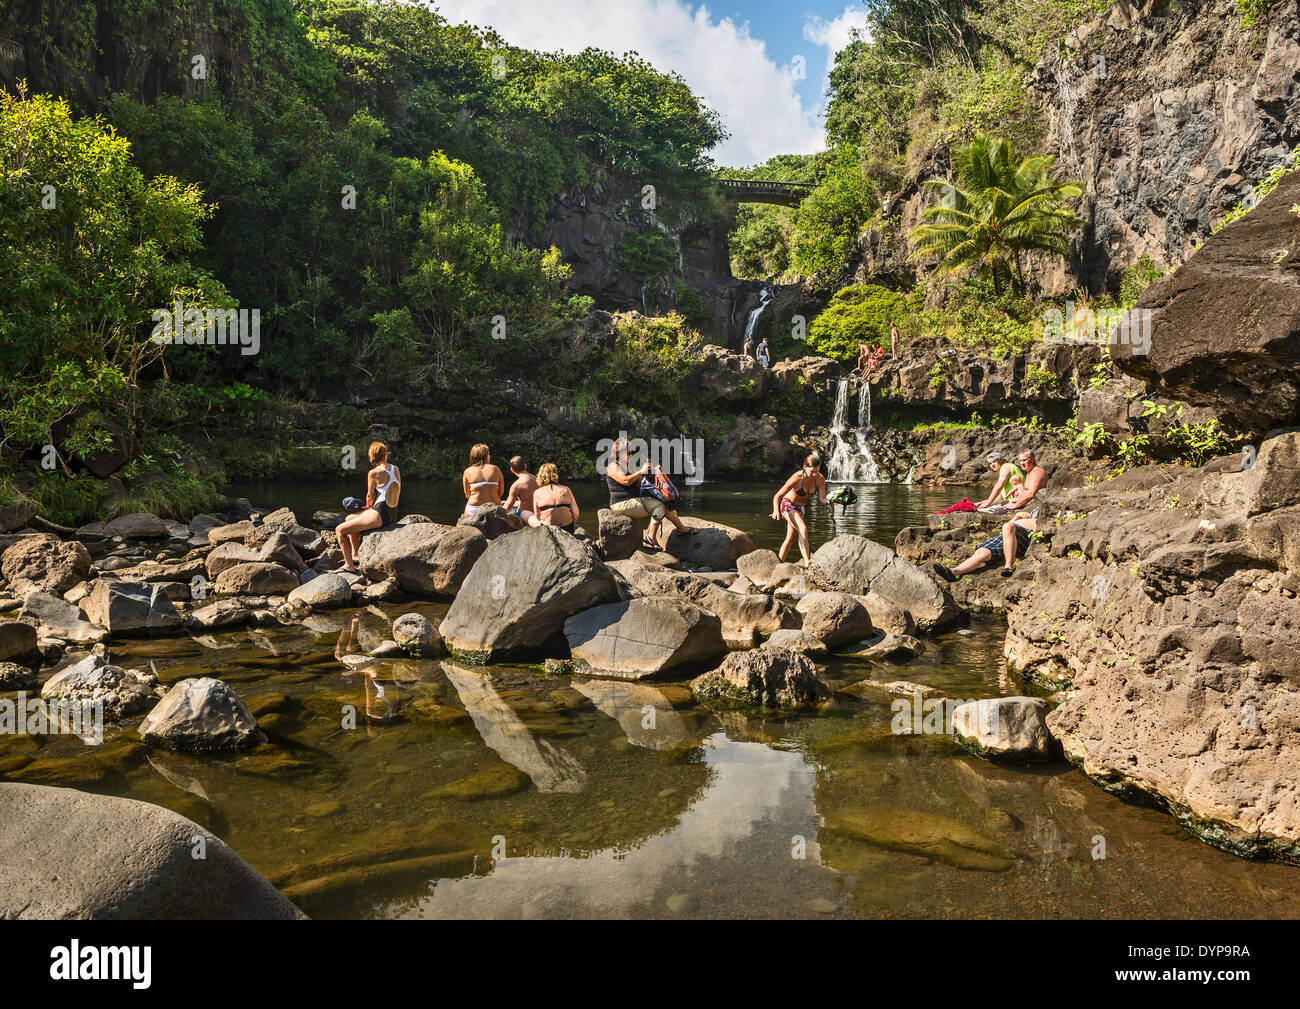 La bellissima scena di sette piscine sacra di Maui. Foto Stock